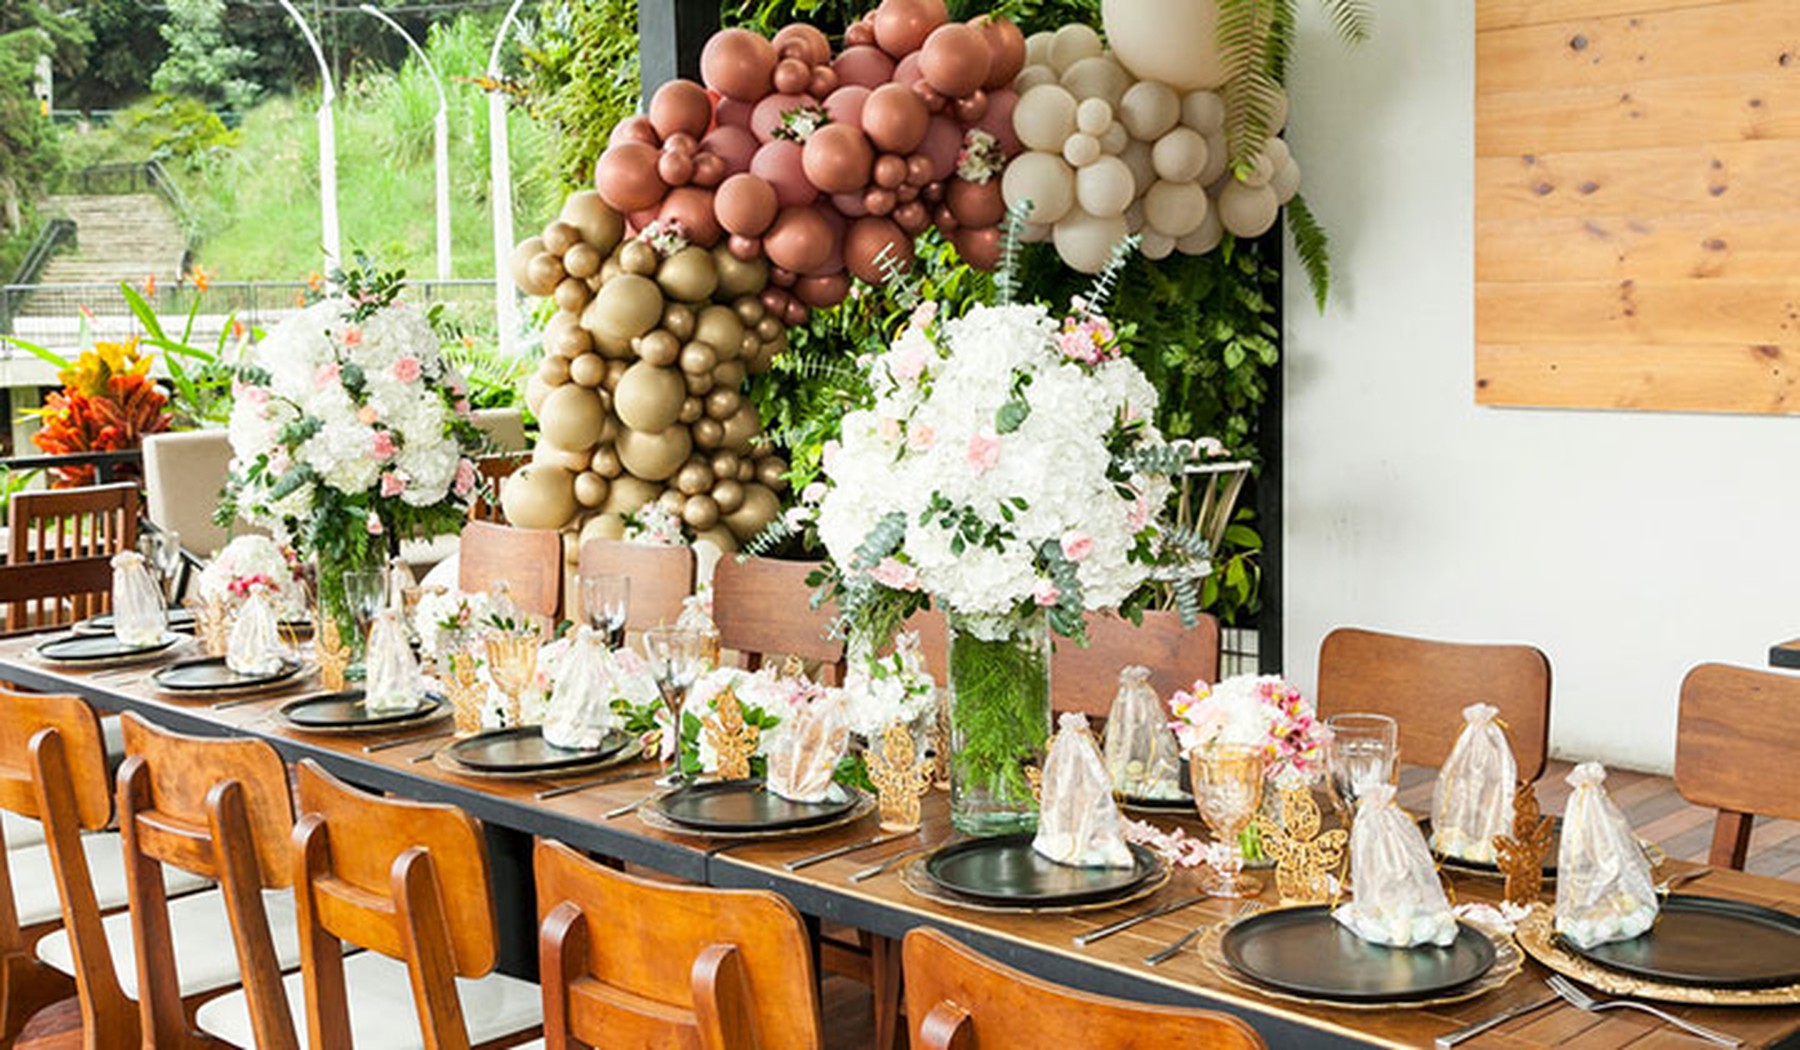 Mesa decorada de comunión. Hay platos negros, ramos de flores rosas y un arco de globos rosas, beige y blancos